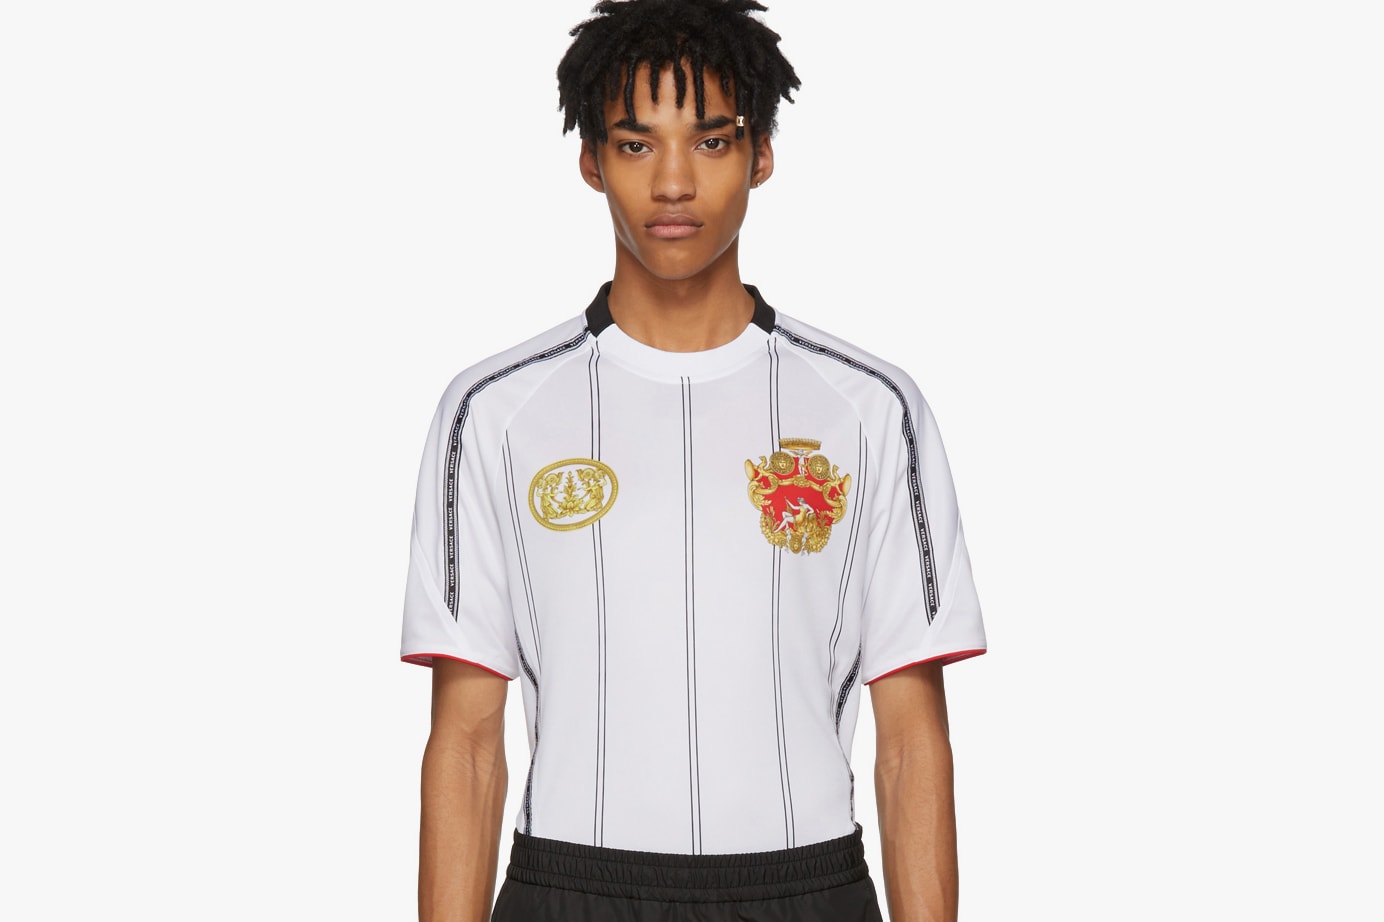 Versace Spring Summer 2018 Soccer Jersey white shirt 700 usd dollars release date info drop SSENSE